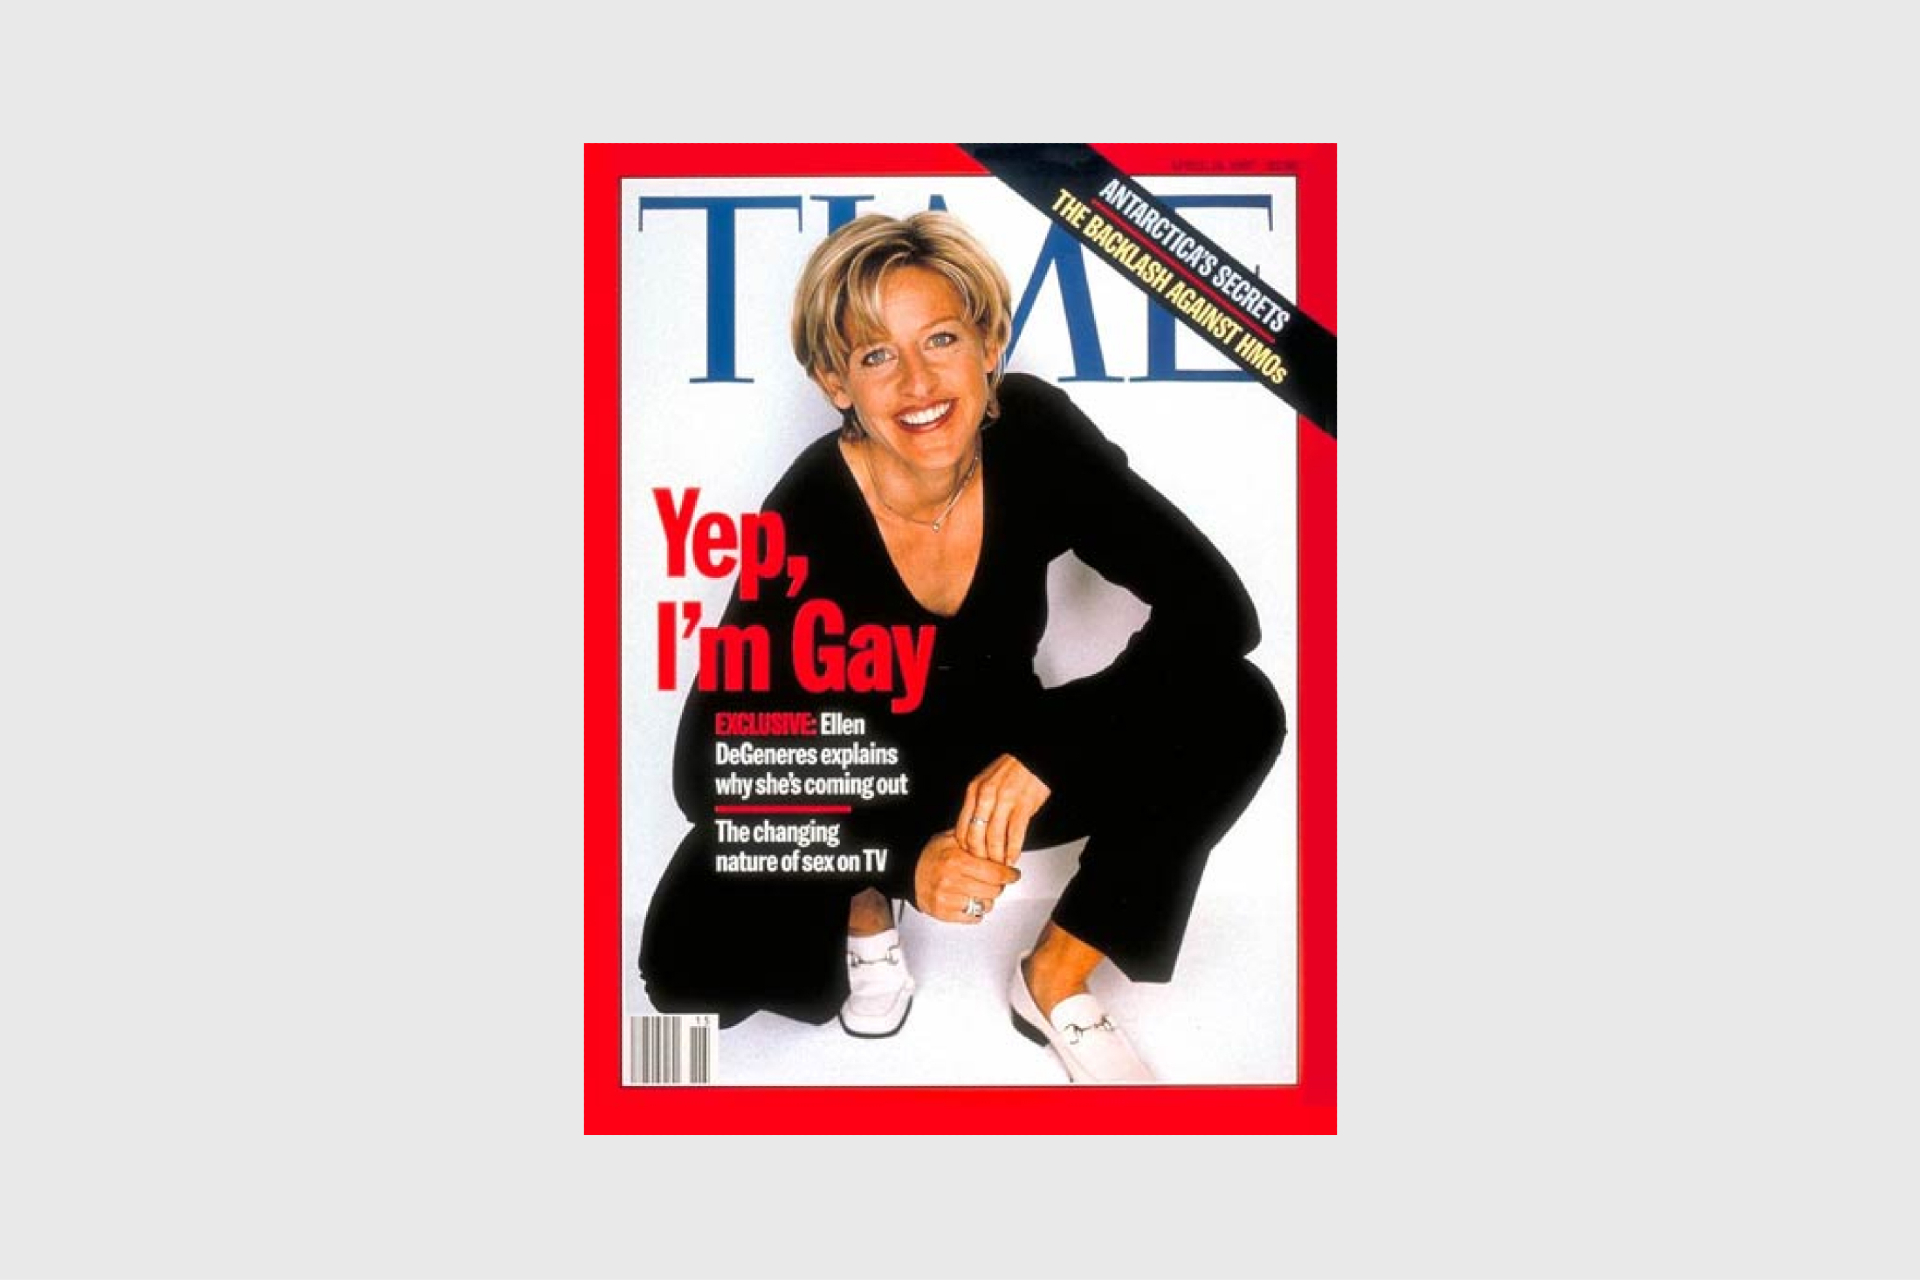 Историческая обложка журнала Time с каминг-аутом Дедженерис